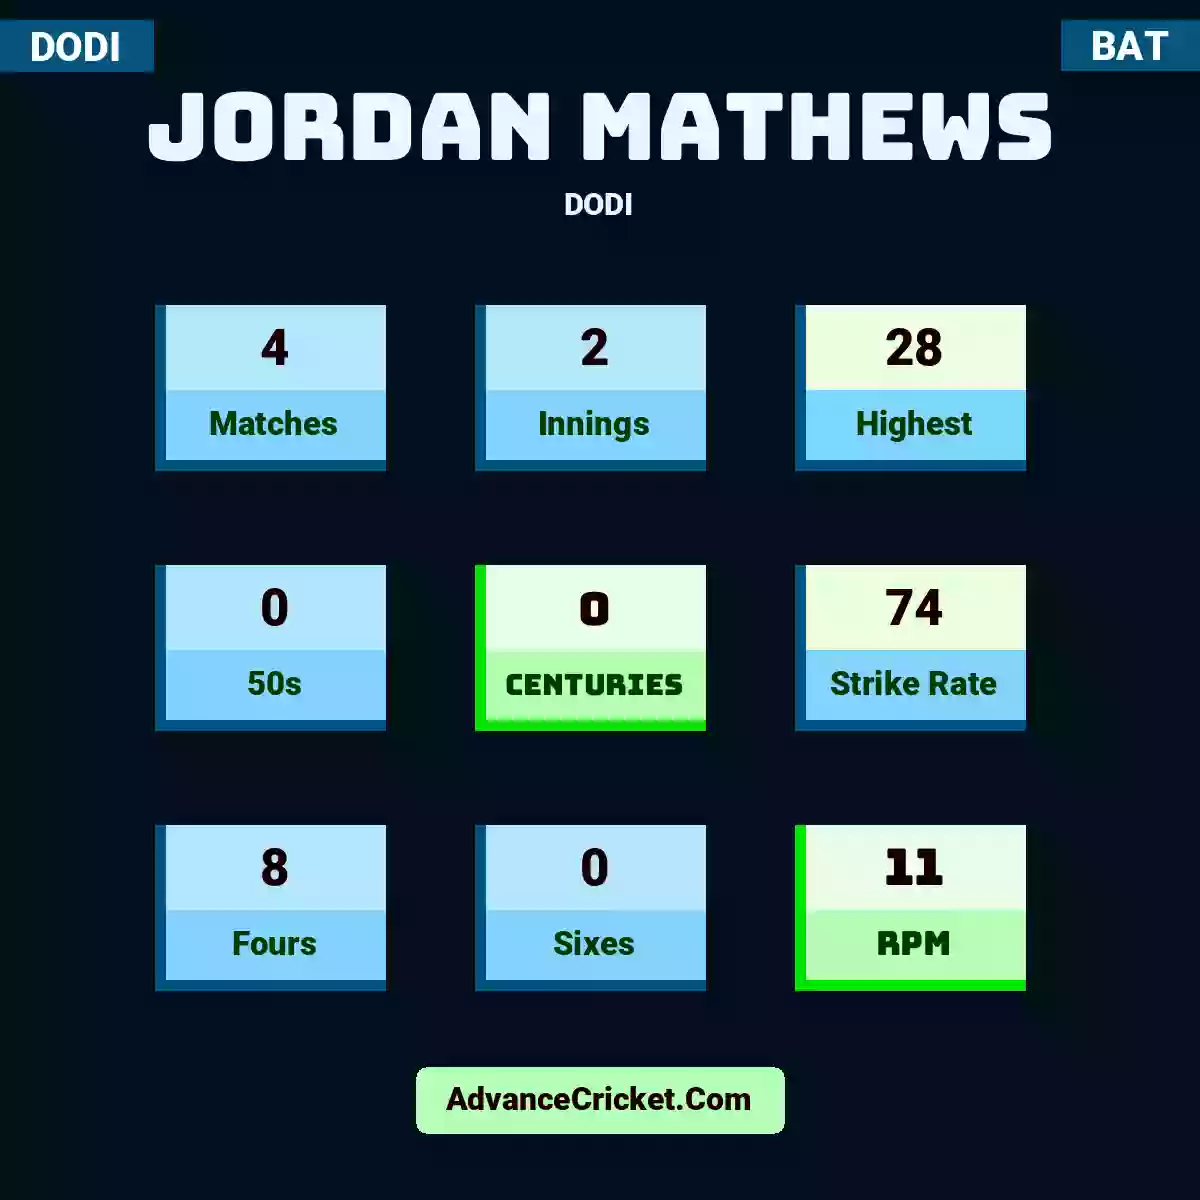 Jordan Mathews DODI , Jordan Mathews played 4 matches, scored 28 runs as highest, 0 half-centuries, and 0 centuries, with a strike rate of 74. J.Mathews hit 8 fours and 0 sixes, with an RPM of 11.